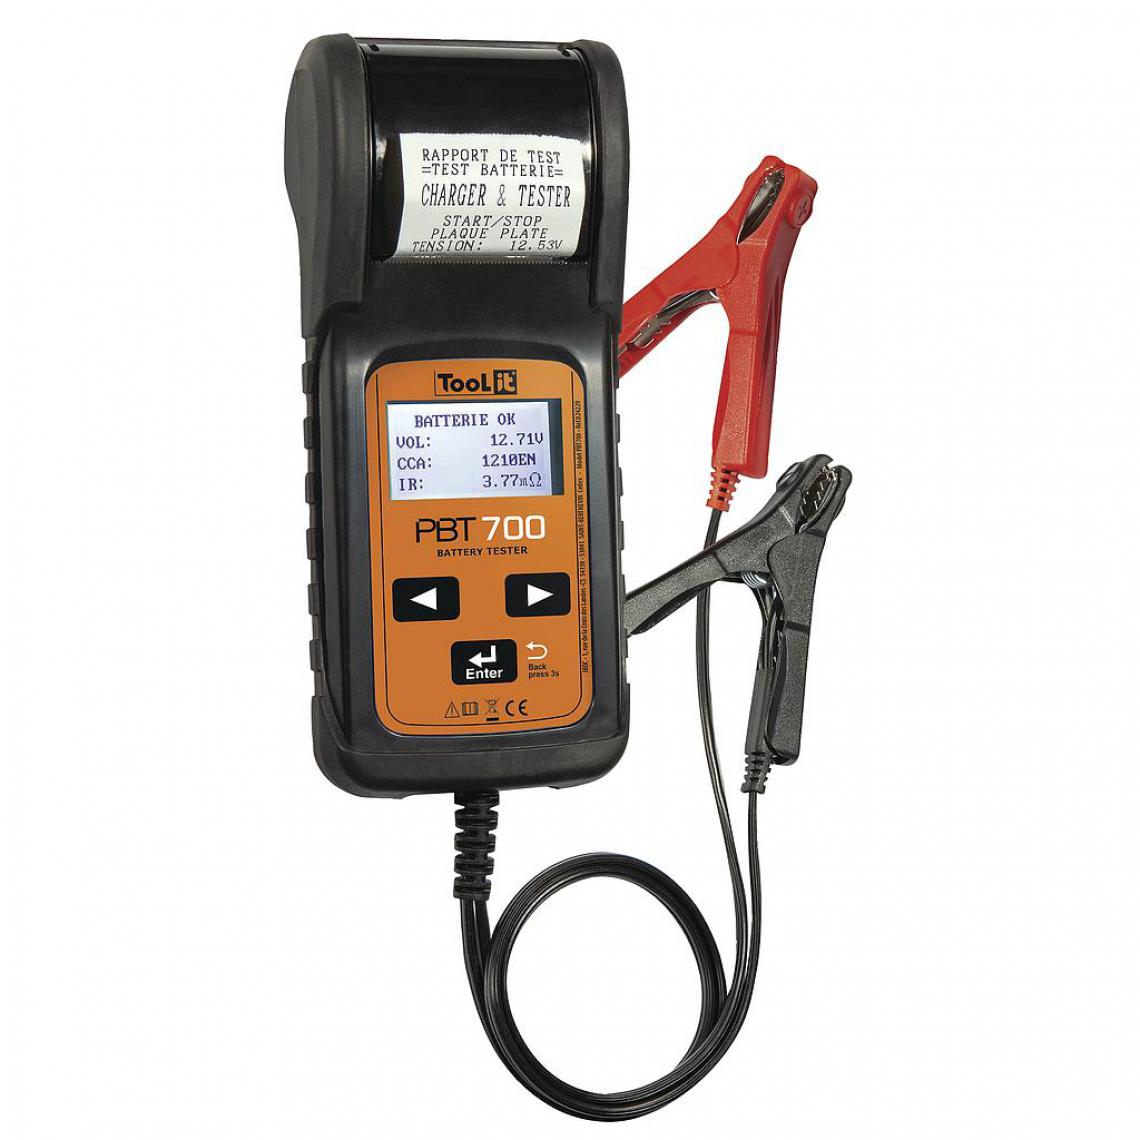 Gys - Gys - Testeur de batterie PBT700 - 024229 - Consommables pour outillage motorisé